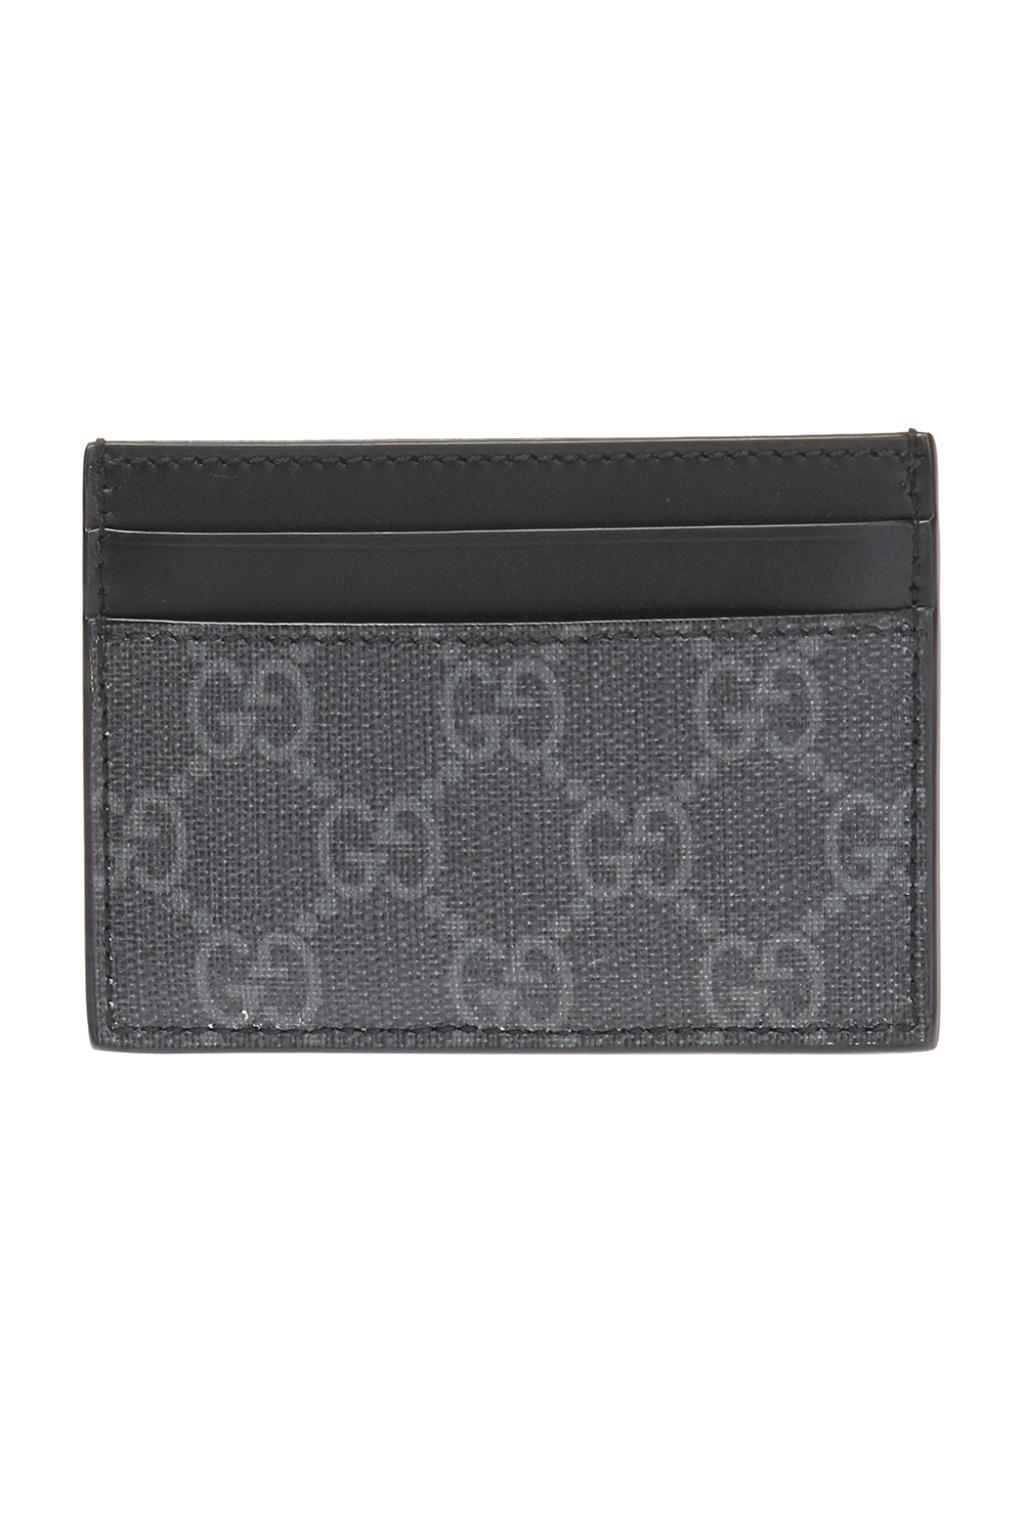 Gucci Black & Grey Gg Supreme Kingsnake Card Holder - 1058 Grey